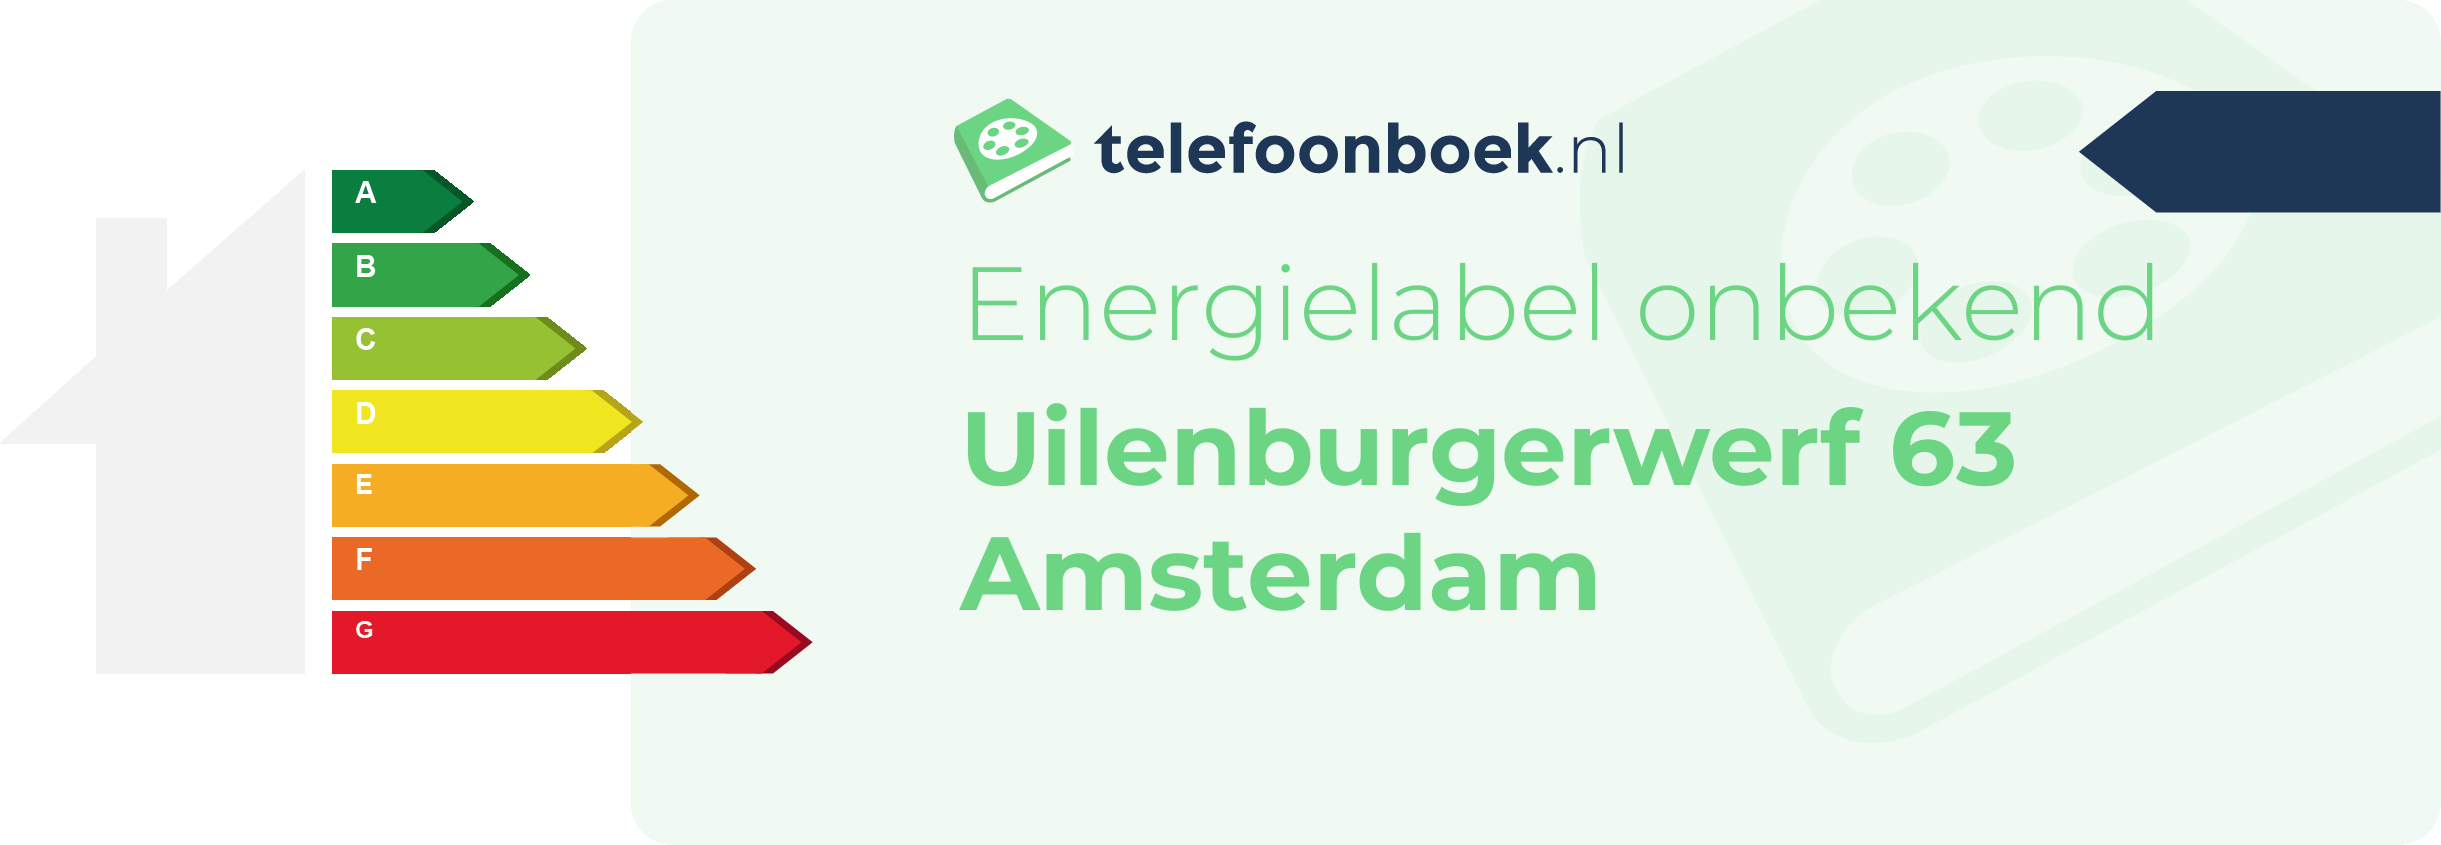 Energielabel Uilenburgerwerf 63 Amsterdam